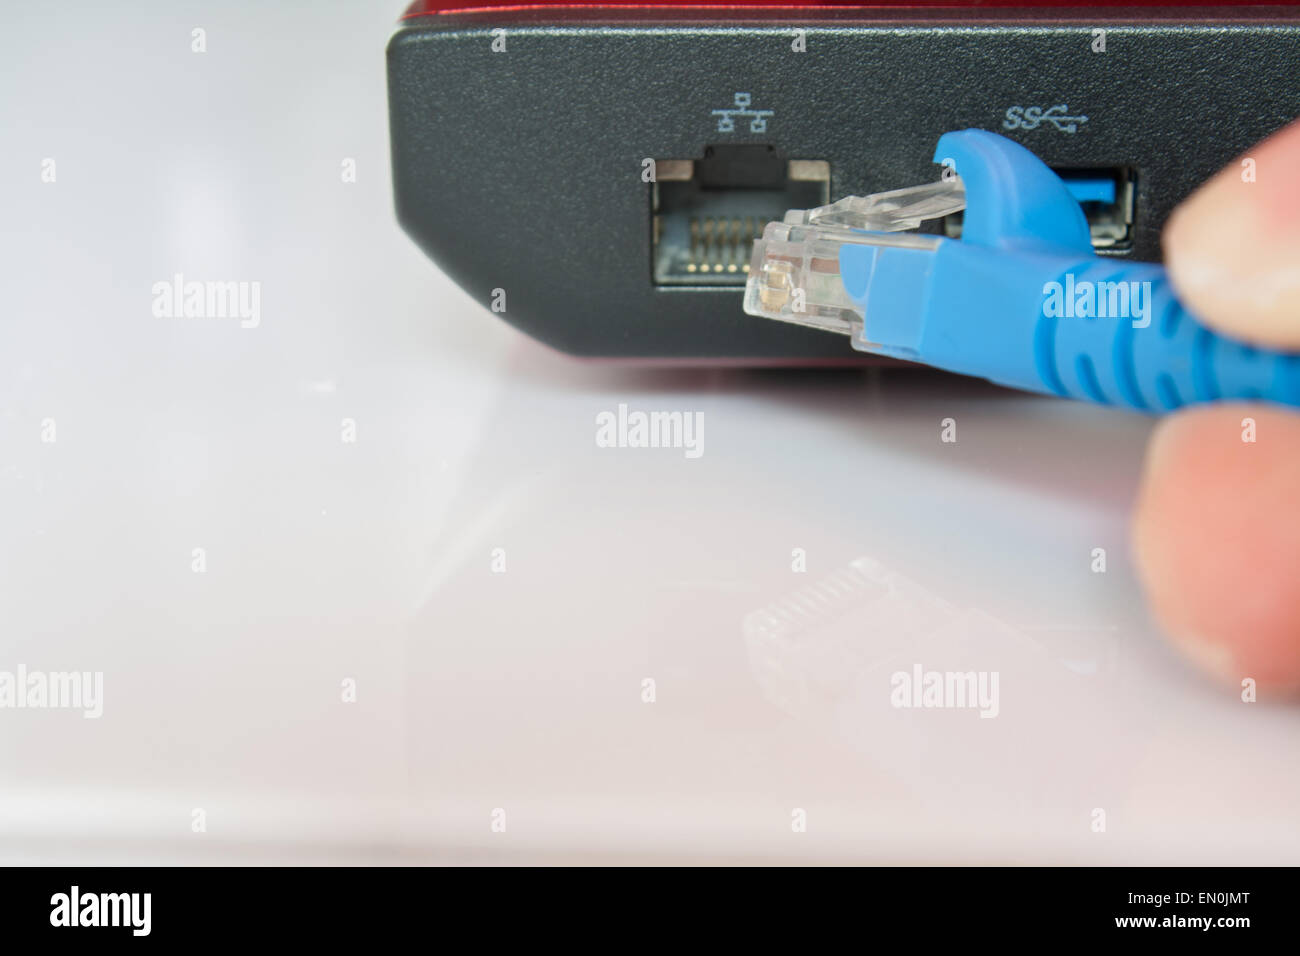 Anschluss lan-Anschluss, Laptop-Computer isoliert auf weißem Hintergrund  Stockfotografie - Alamy